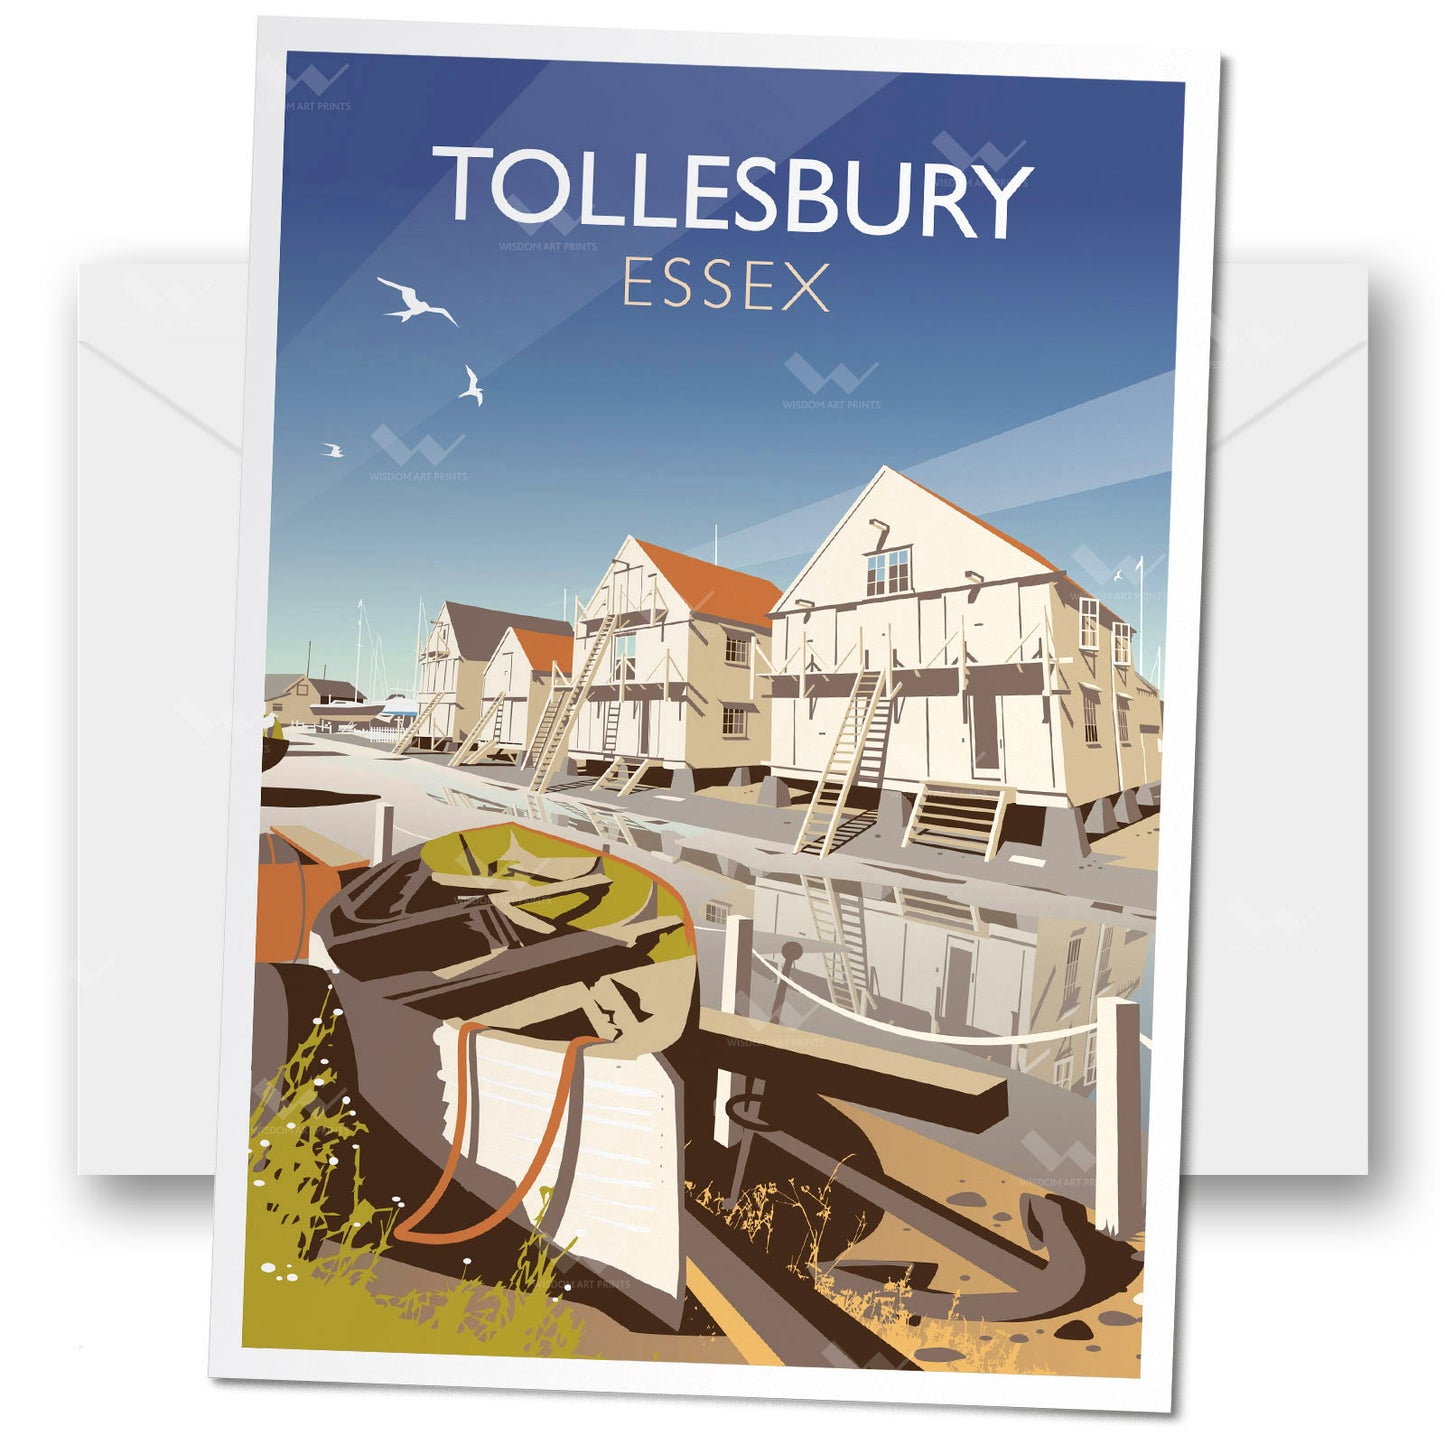 Tollesbury, Essex